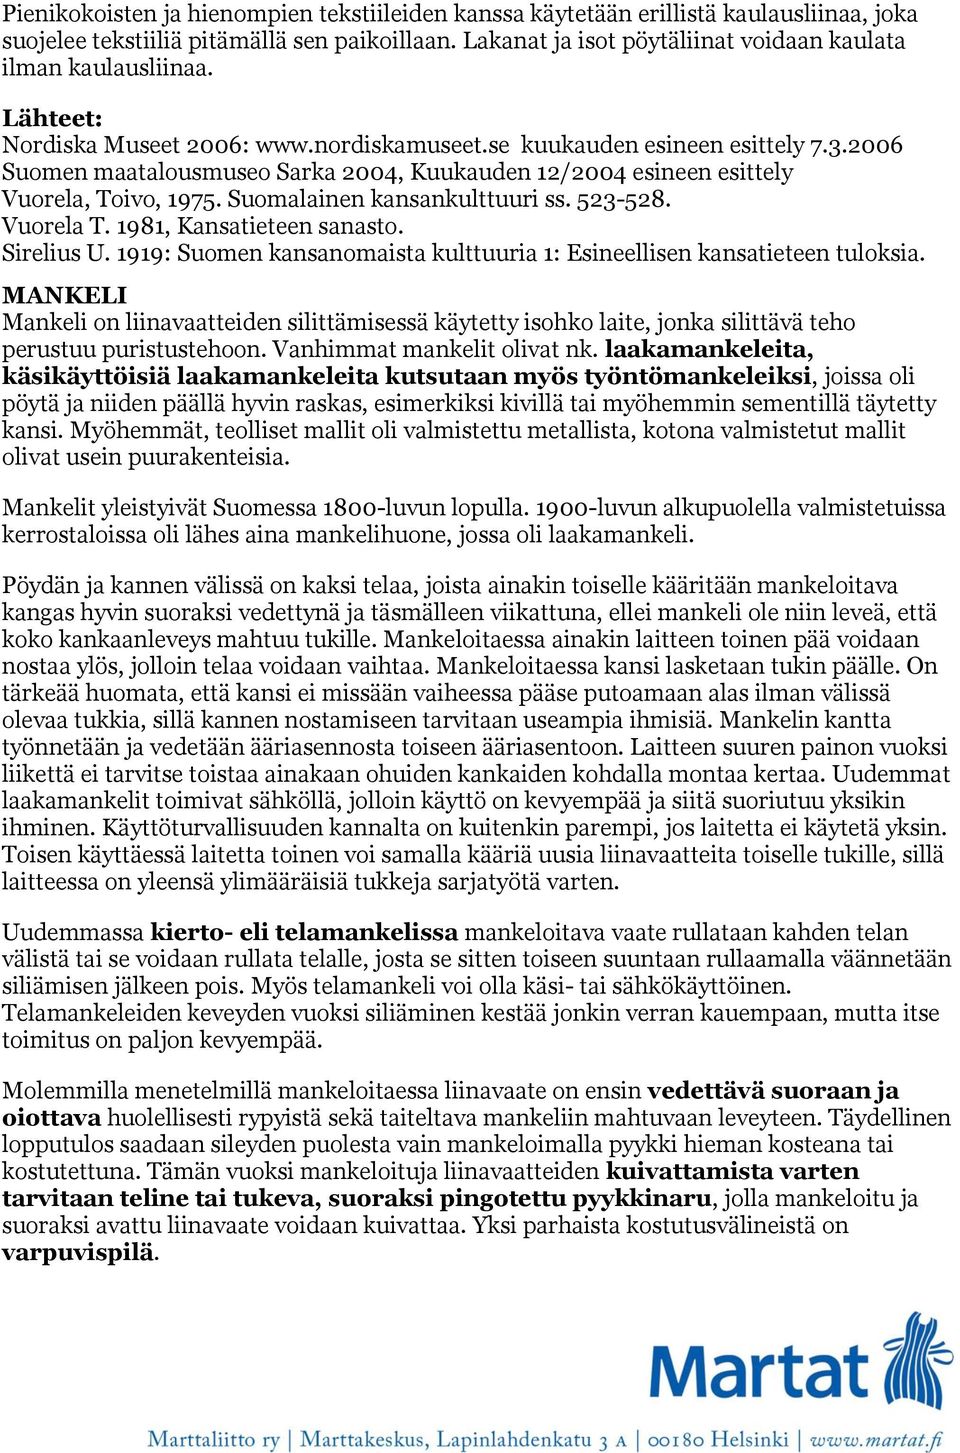 2006 Suomen maatalousmuseo Sarka 2004, Kuukauden 12/2004 esineen esittely Vuorela, Toivo, 1975. Suomalainen kansankulttuuri ss. 523-528. Vuorela T. 1981, Kansatieteen sanasto. Sirelius U.